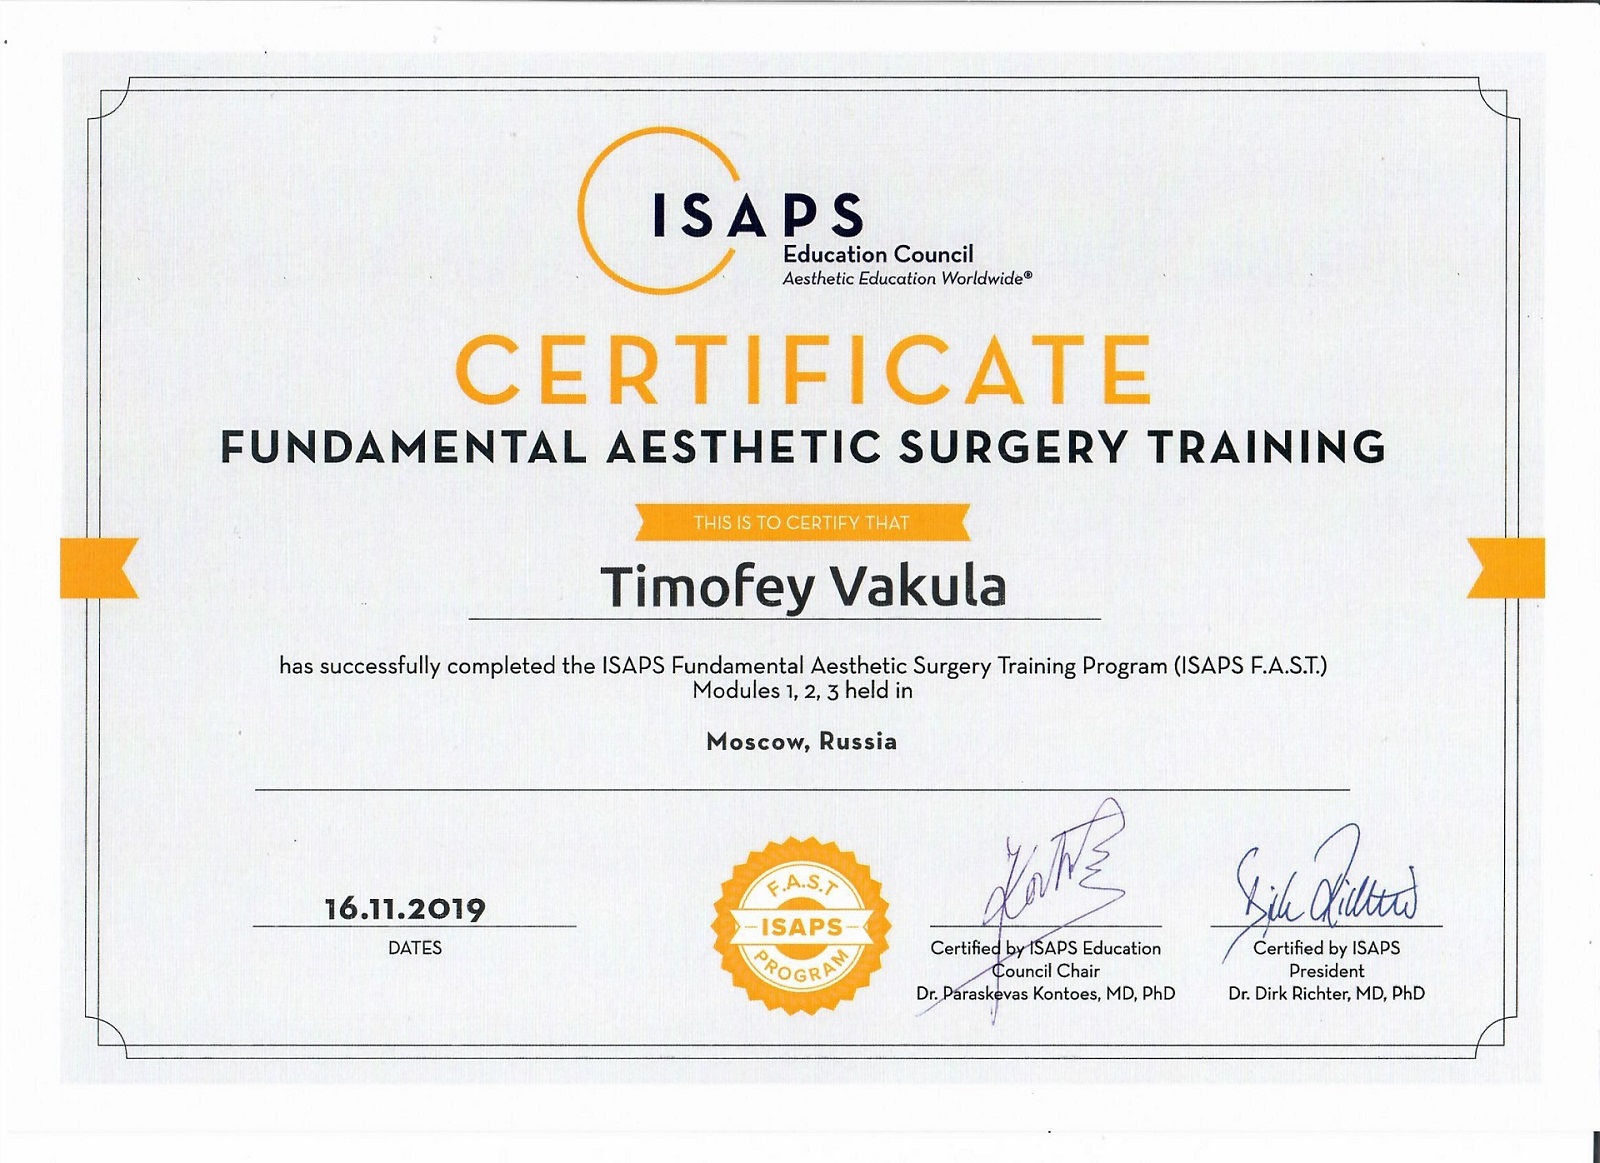 Cертификат ISAPS о фундаментальном обучении эстетической хирургии, 2019 год